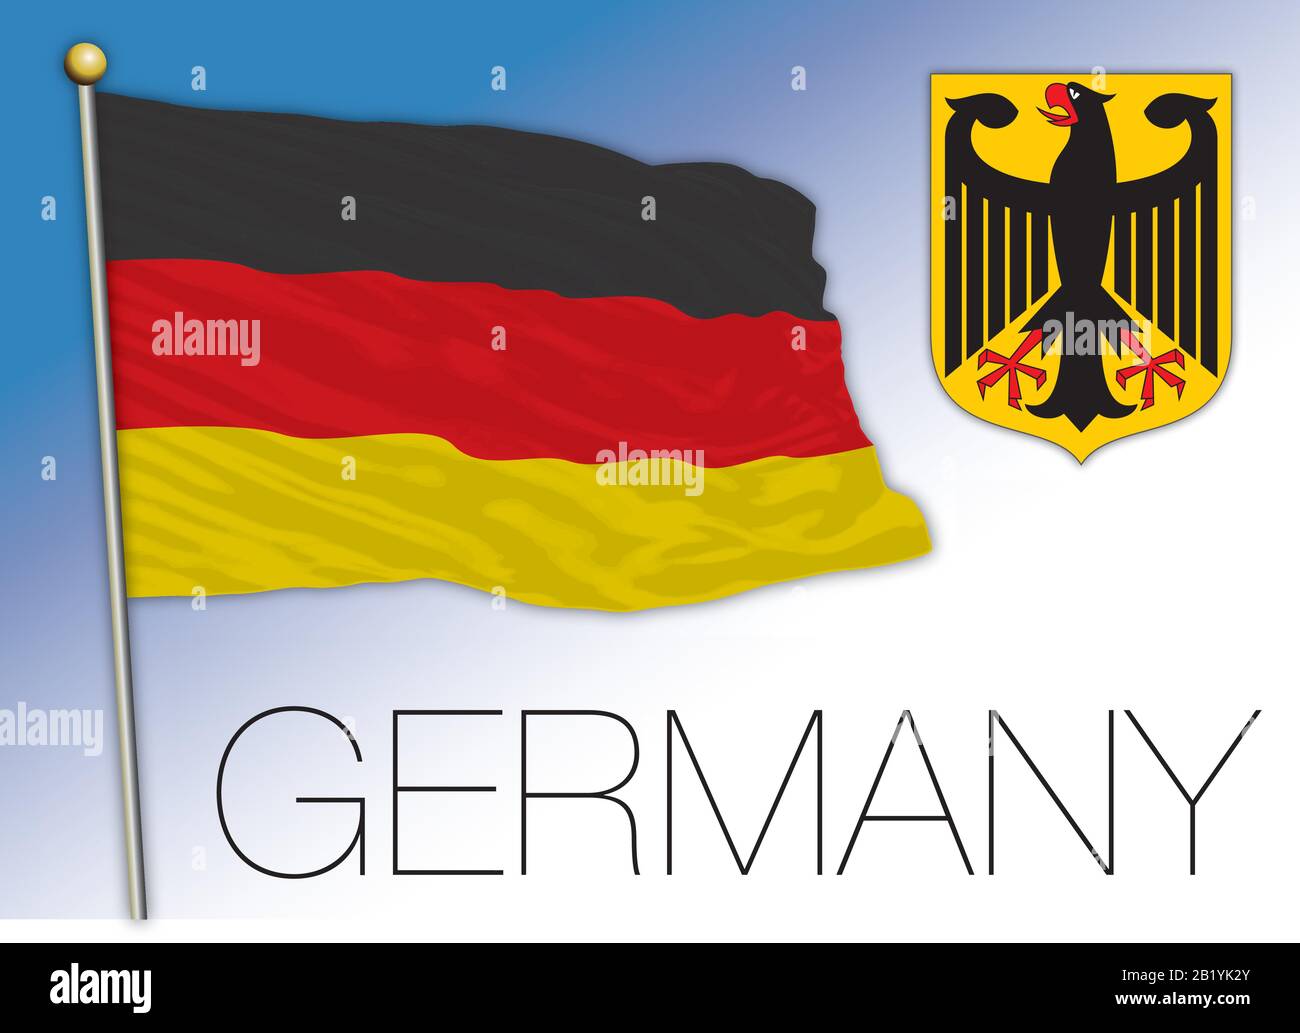 Alemania bandera nacional oficial y escudo de armas, Unión Europea, ilustración vectorial Ilustración del Vector